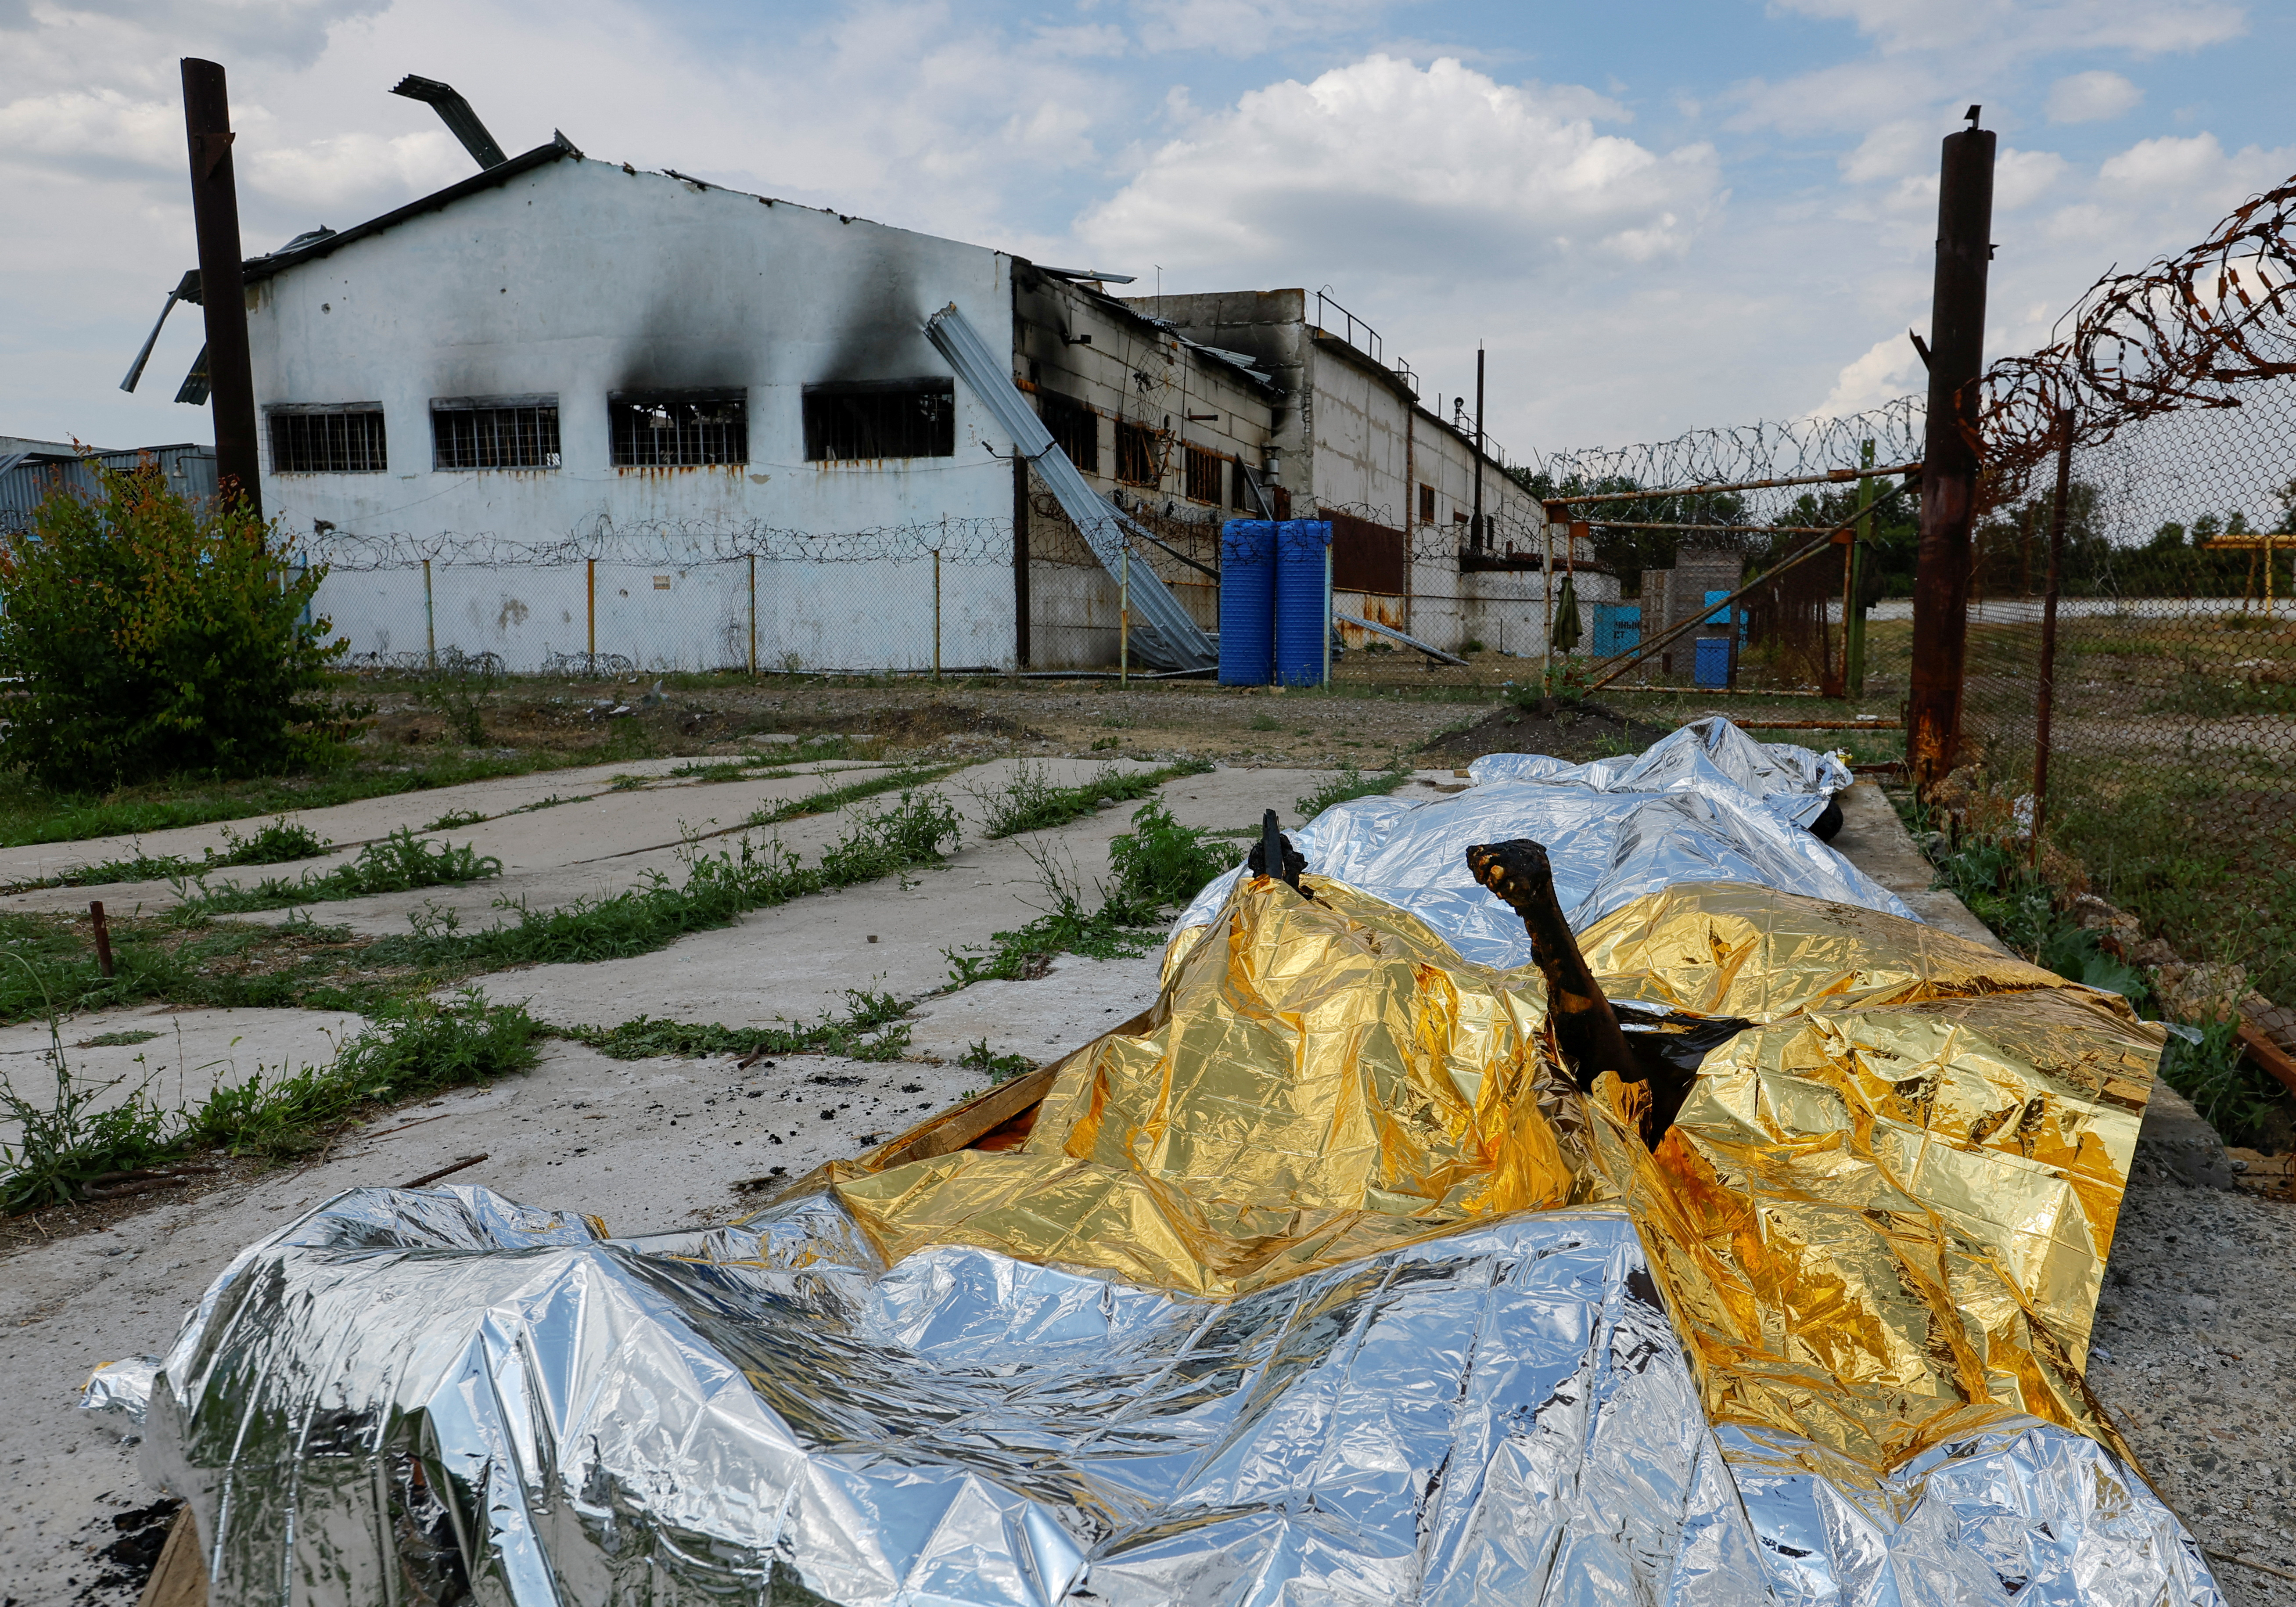 Cuerpos quemados de detenidos yacen cubiertos tras el bombardeo en un centro de detención preventiva en el curso del conflicto entre Ucrania y Rusia, en el asentamiento de Olenivka en la región de Donetsk, Ucrania 29 de julio de 2022. REUTERS/Alexander Ermochenko